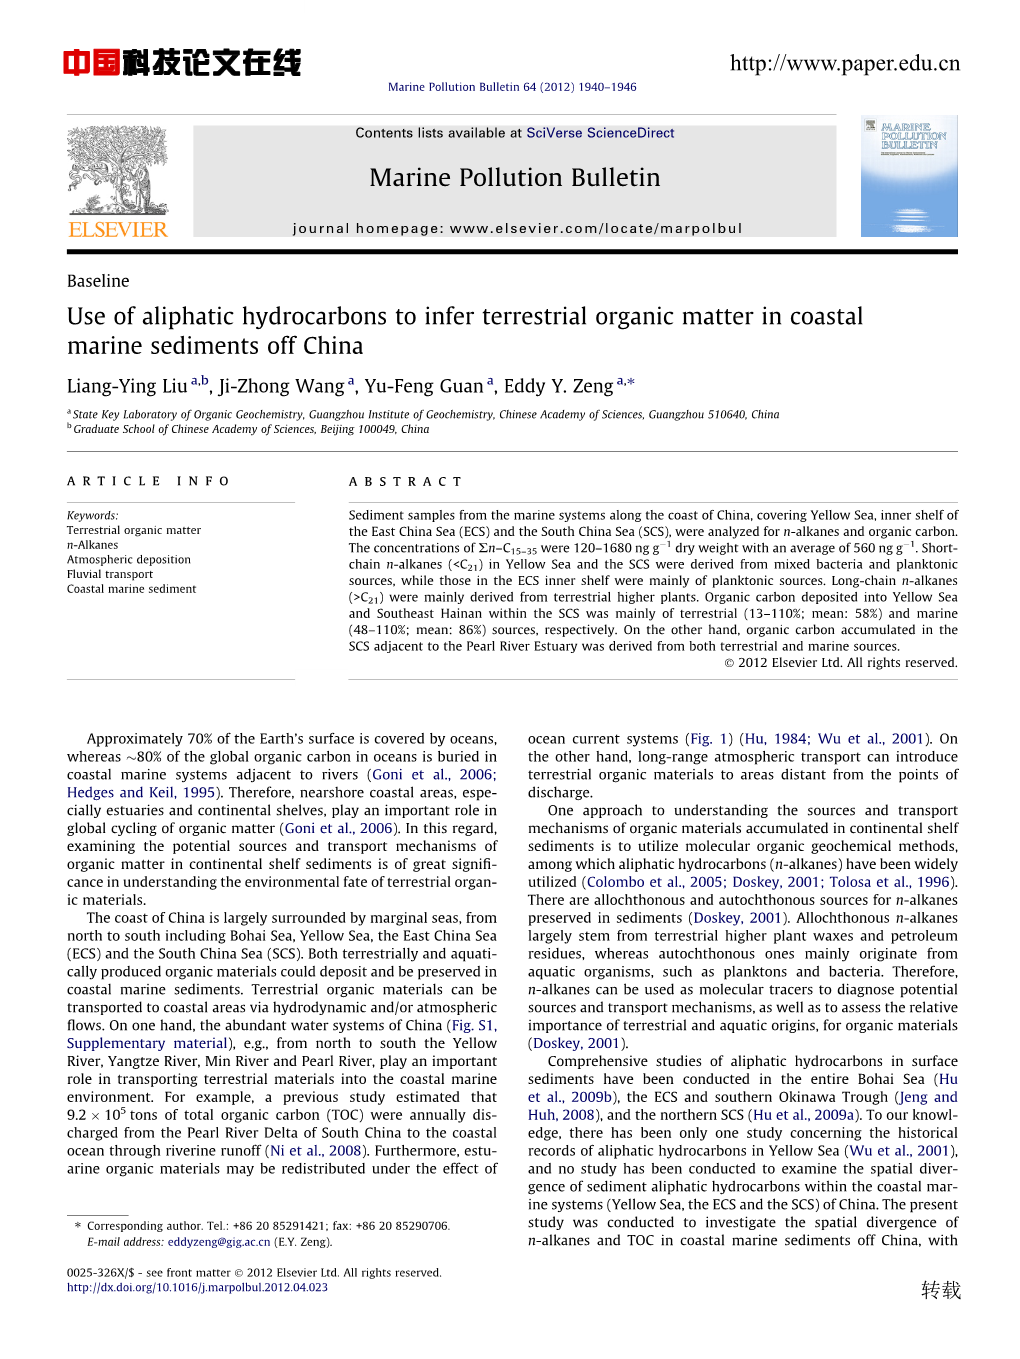 Use of Aliphatic Hydrocarbons to Infer Terrestrial Organic Matter in Coastal Marine Sediments Off China ⇑ Liang-Ying Liu A,B, Ji-Zhong Wang A, Yu-Feng Guan A, Eddy Y